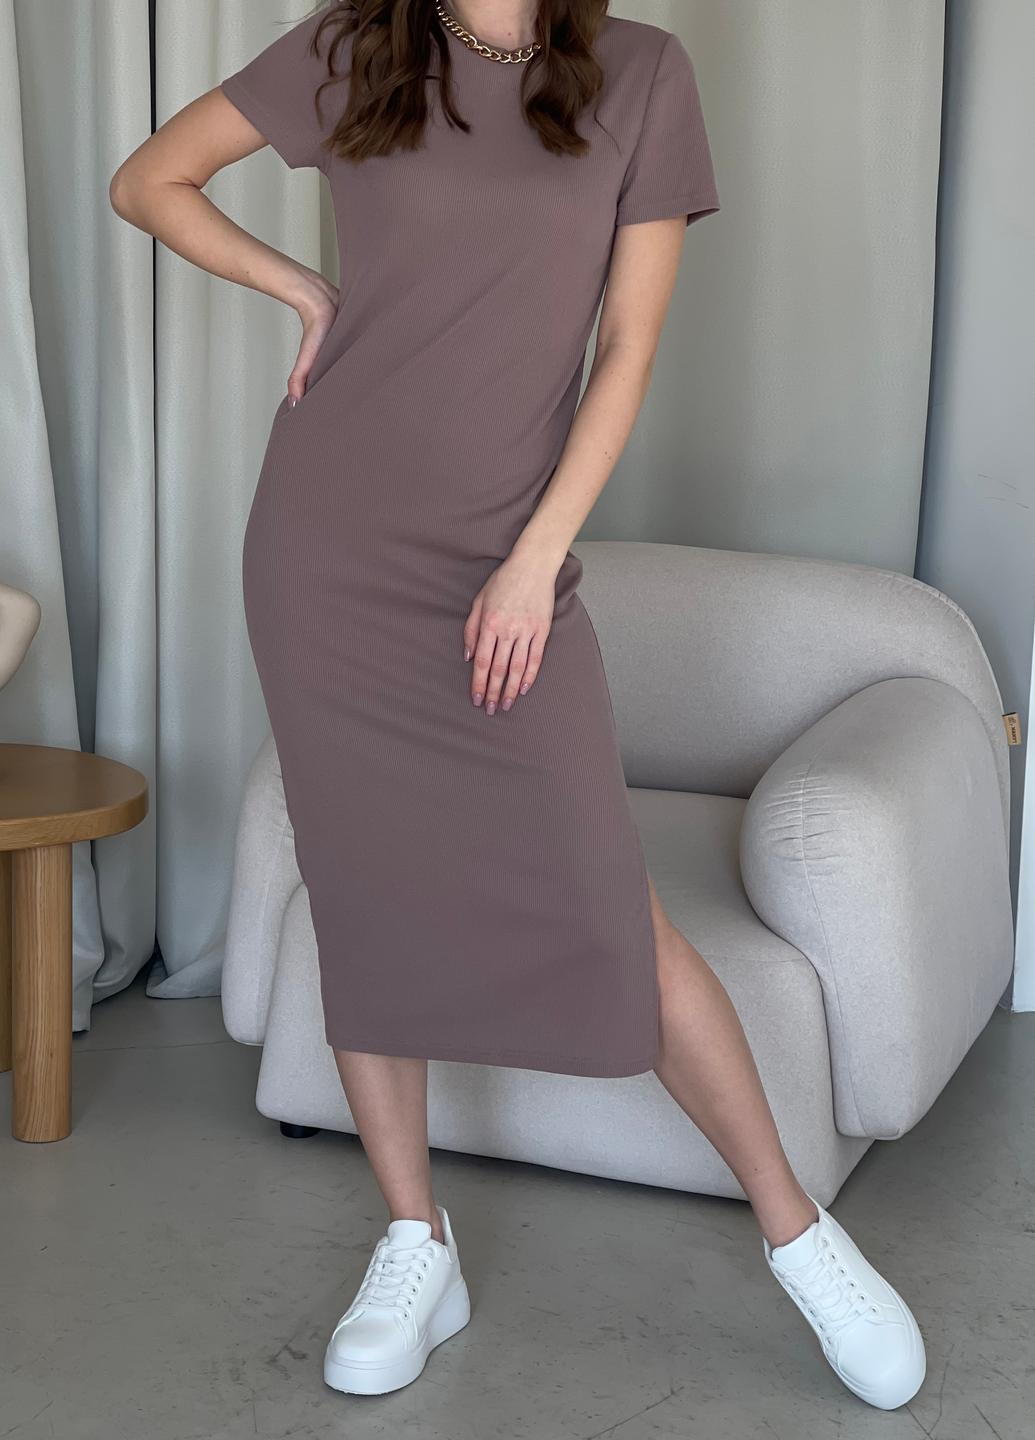 Купить Длинное платье-футболка в рубчик цвета мокко Merlini Кассо 700000124 размер 42-44 (S-M) в интернет-магазине